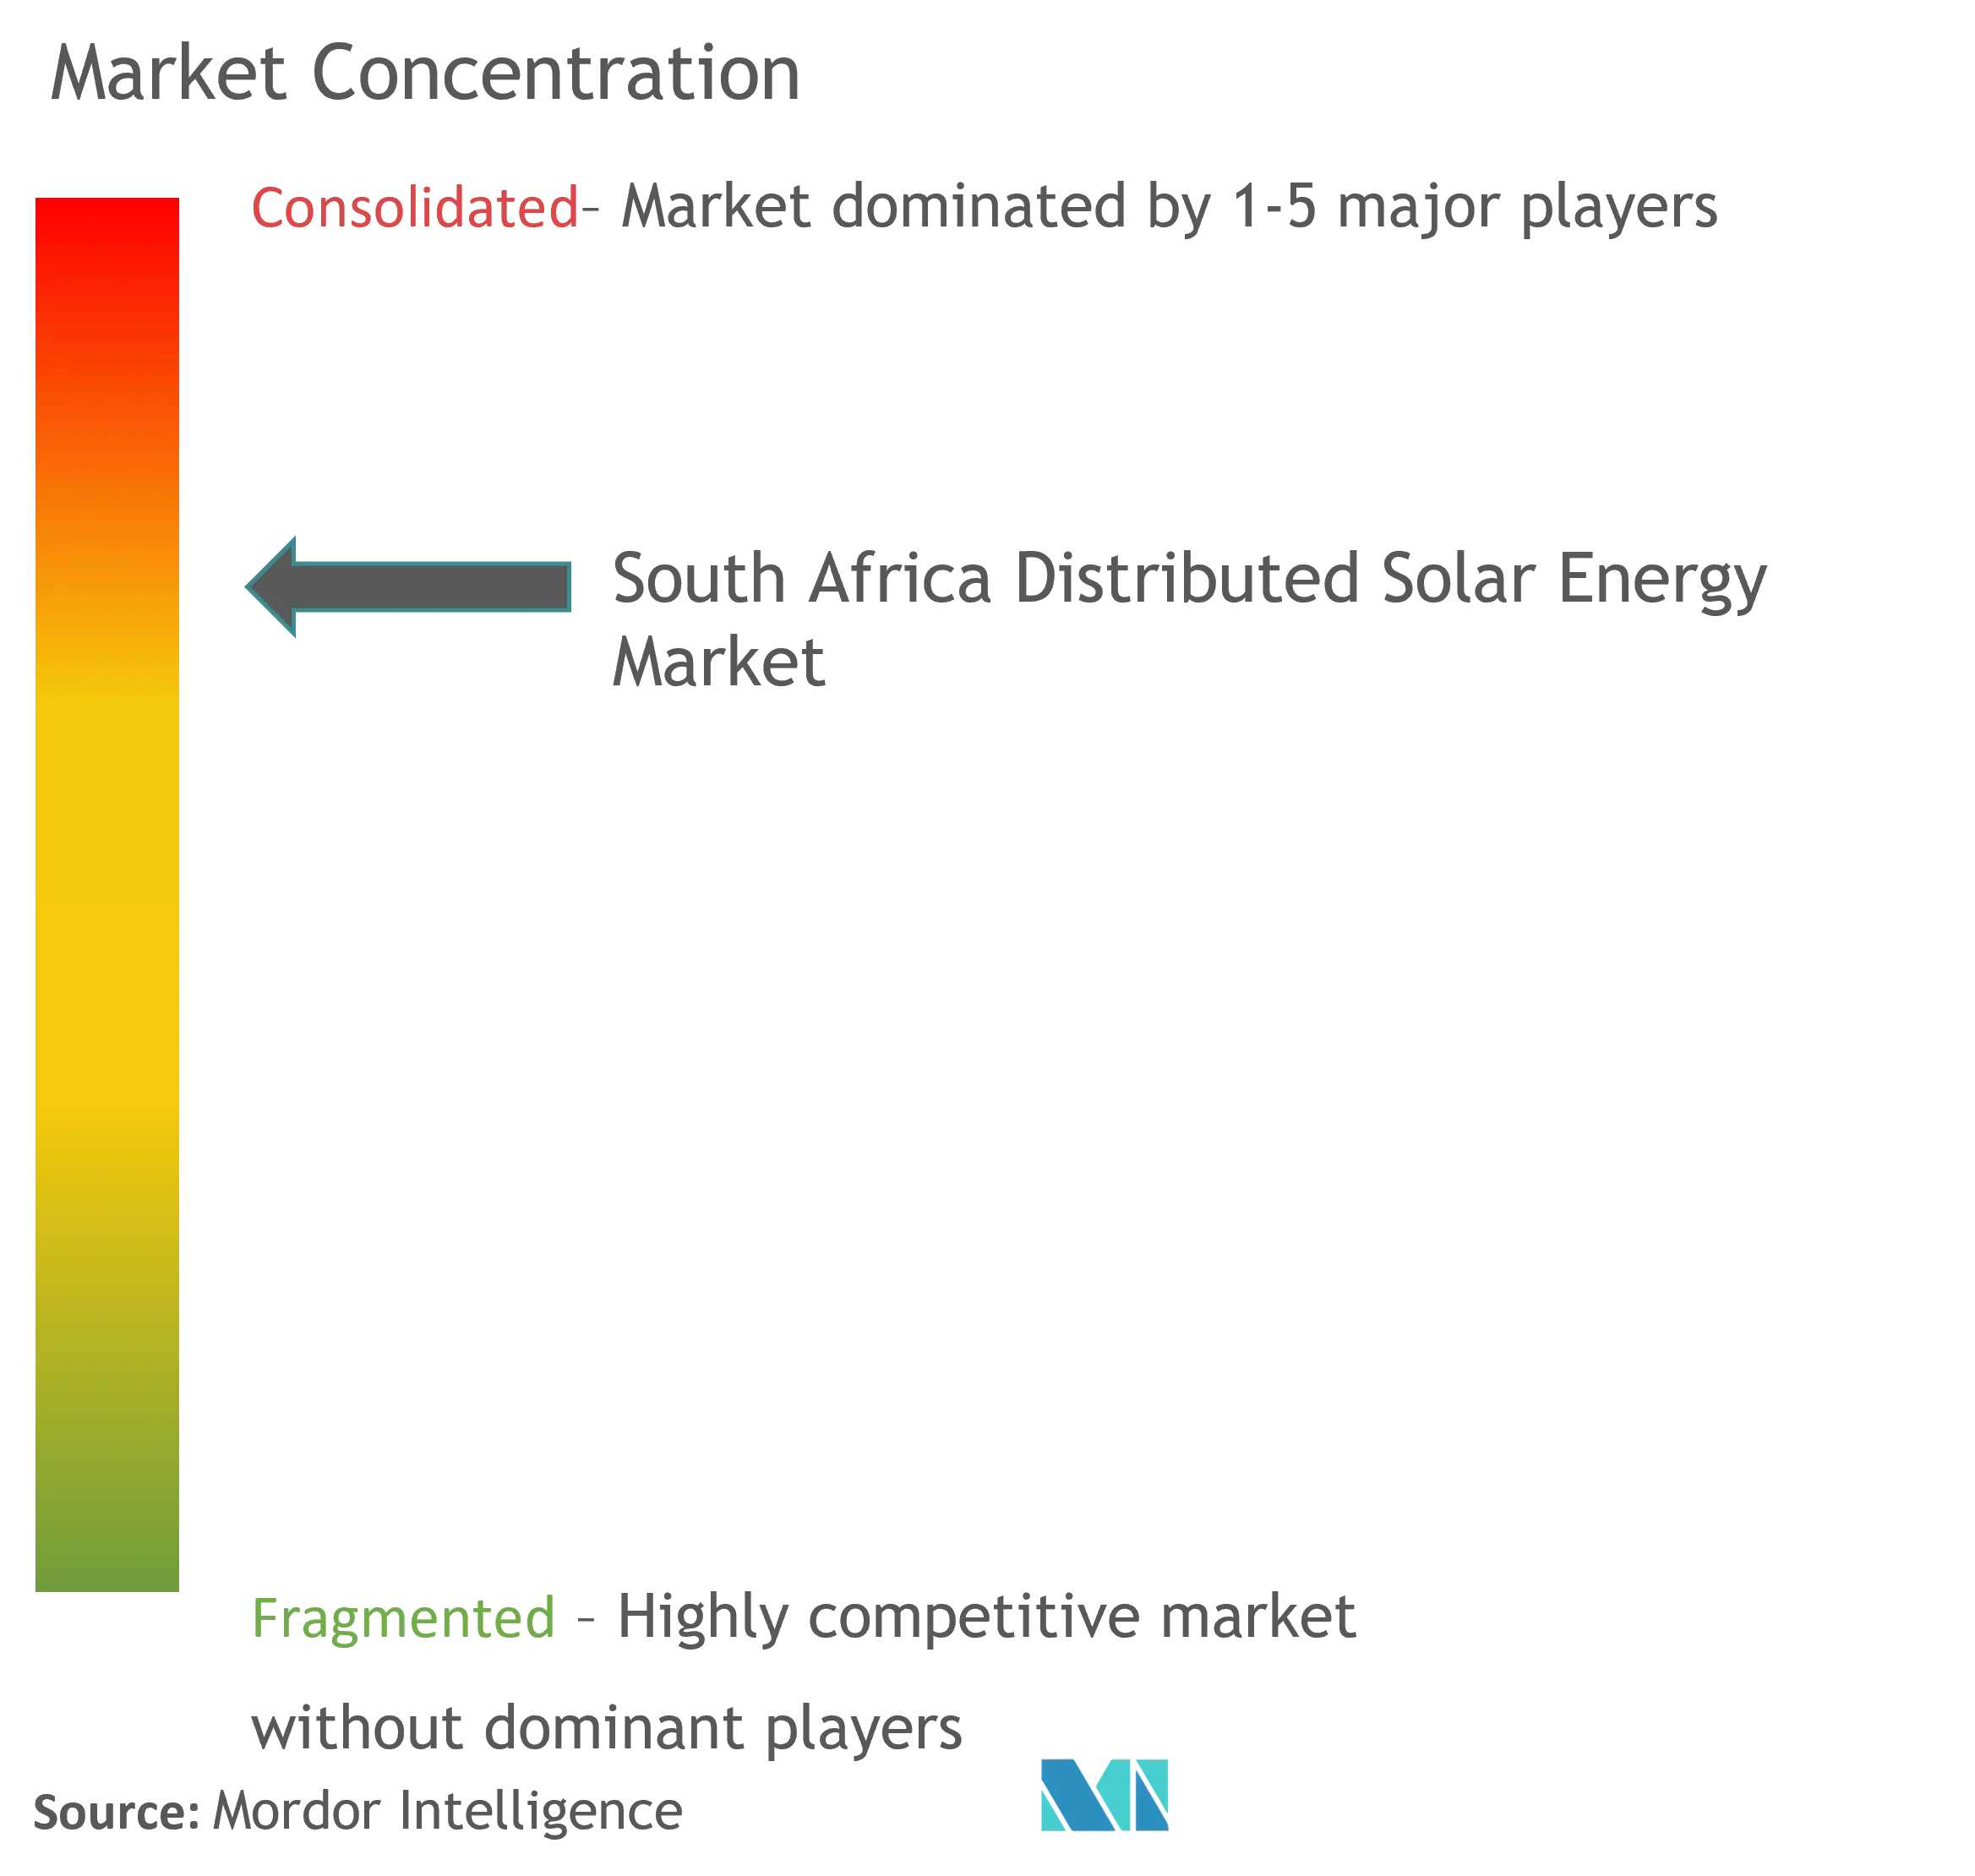 南アフリカの分散型太陽エネルギー市場集中度